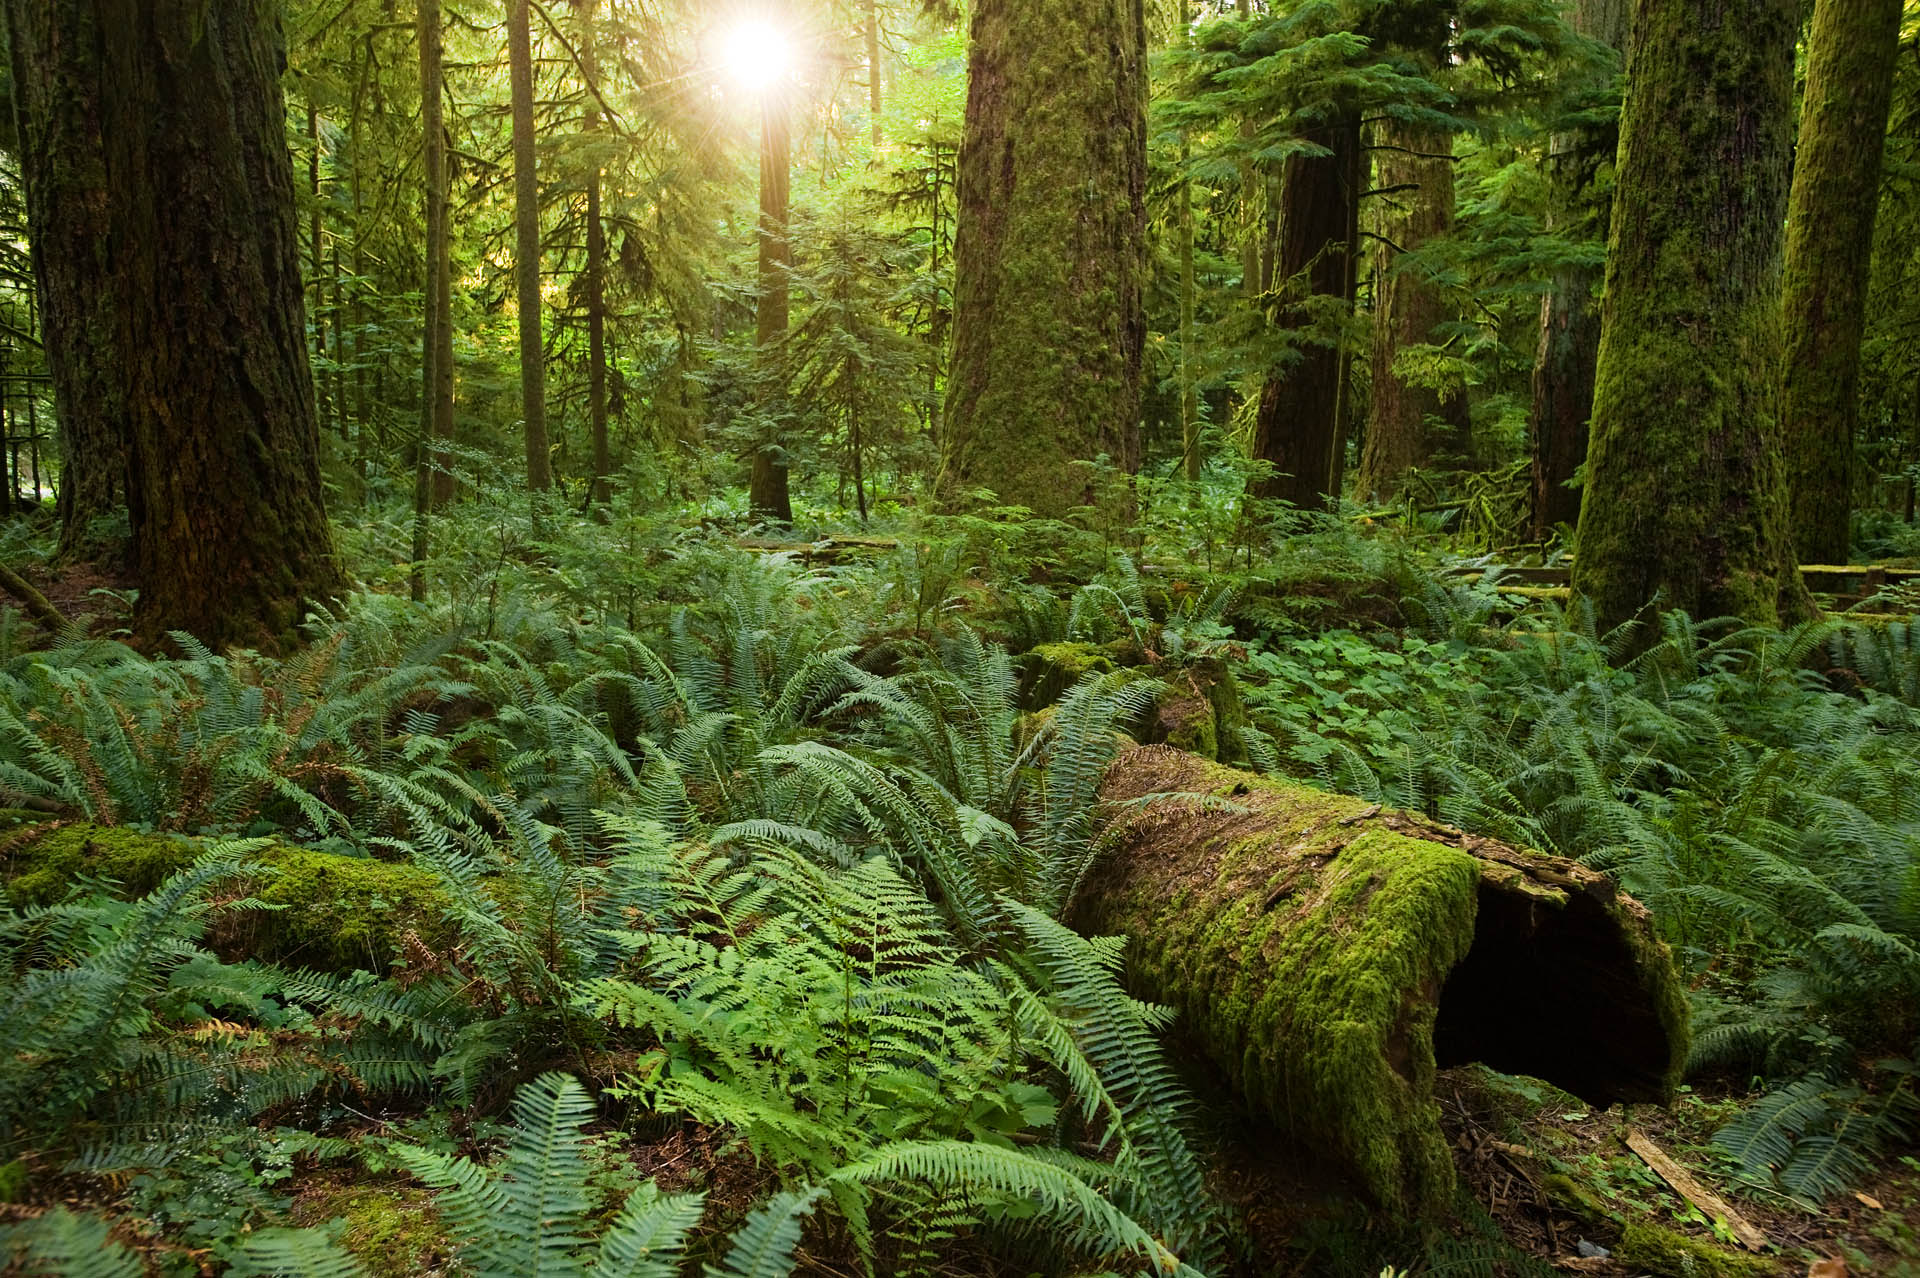 Le botaniste Francis Hallé poursuit son rêve ambitieux de faire renaître une forêt primaire en Europe de l’Ouest. ©  Sang Trinh, Ottawa, Canada, Wikimedia Commons, CC by-sa 2.0